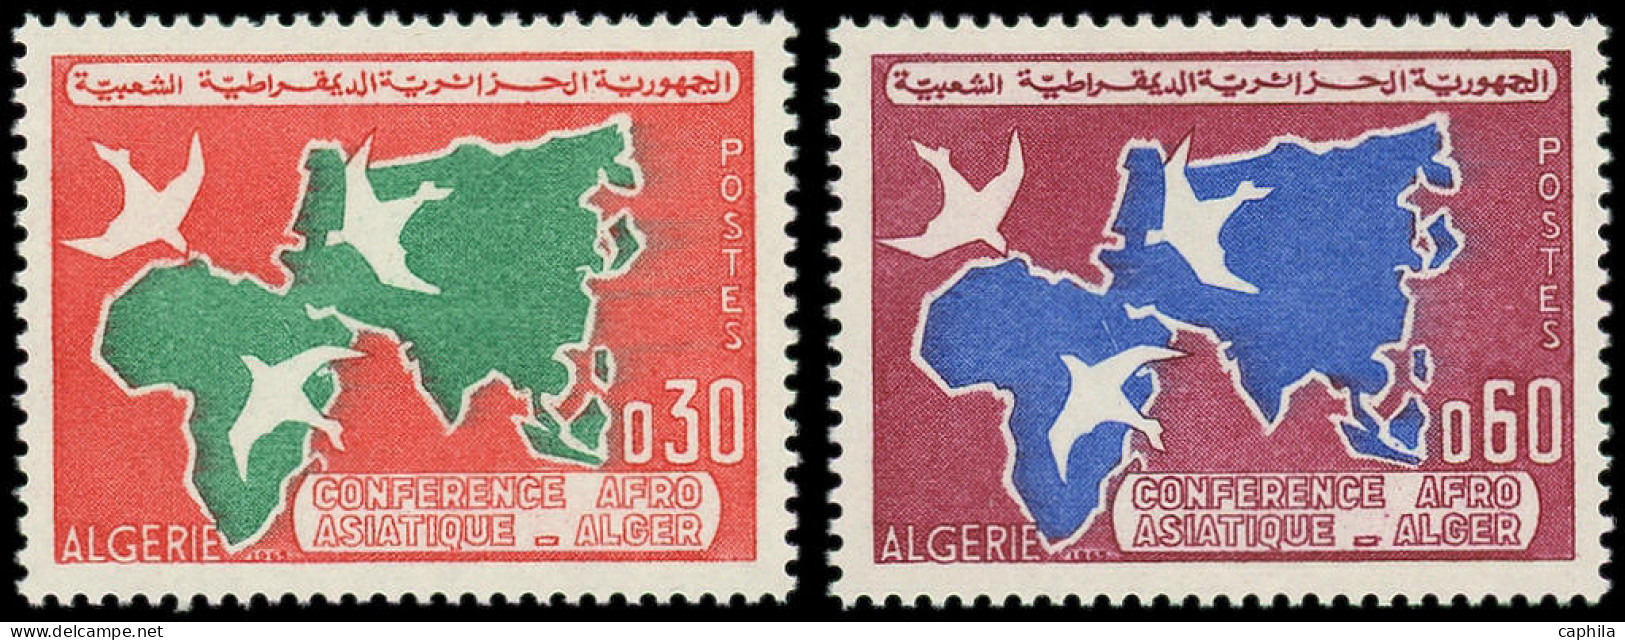 ** ALGERIE - Poste - (1965), Type Non émis "0.30" Et "0.60": Conférence Afro-asiatique Alger - RR - - Algérie (1962-...)